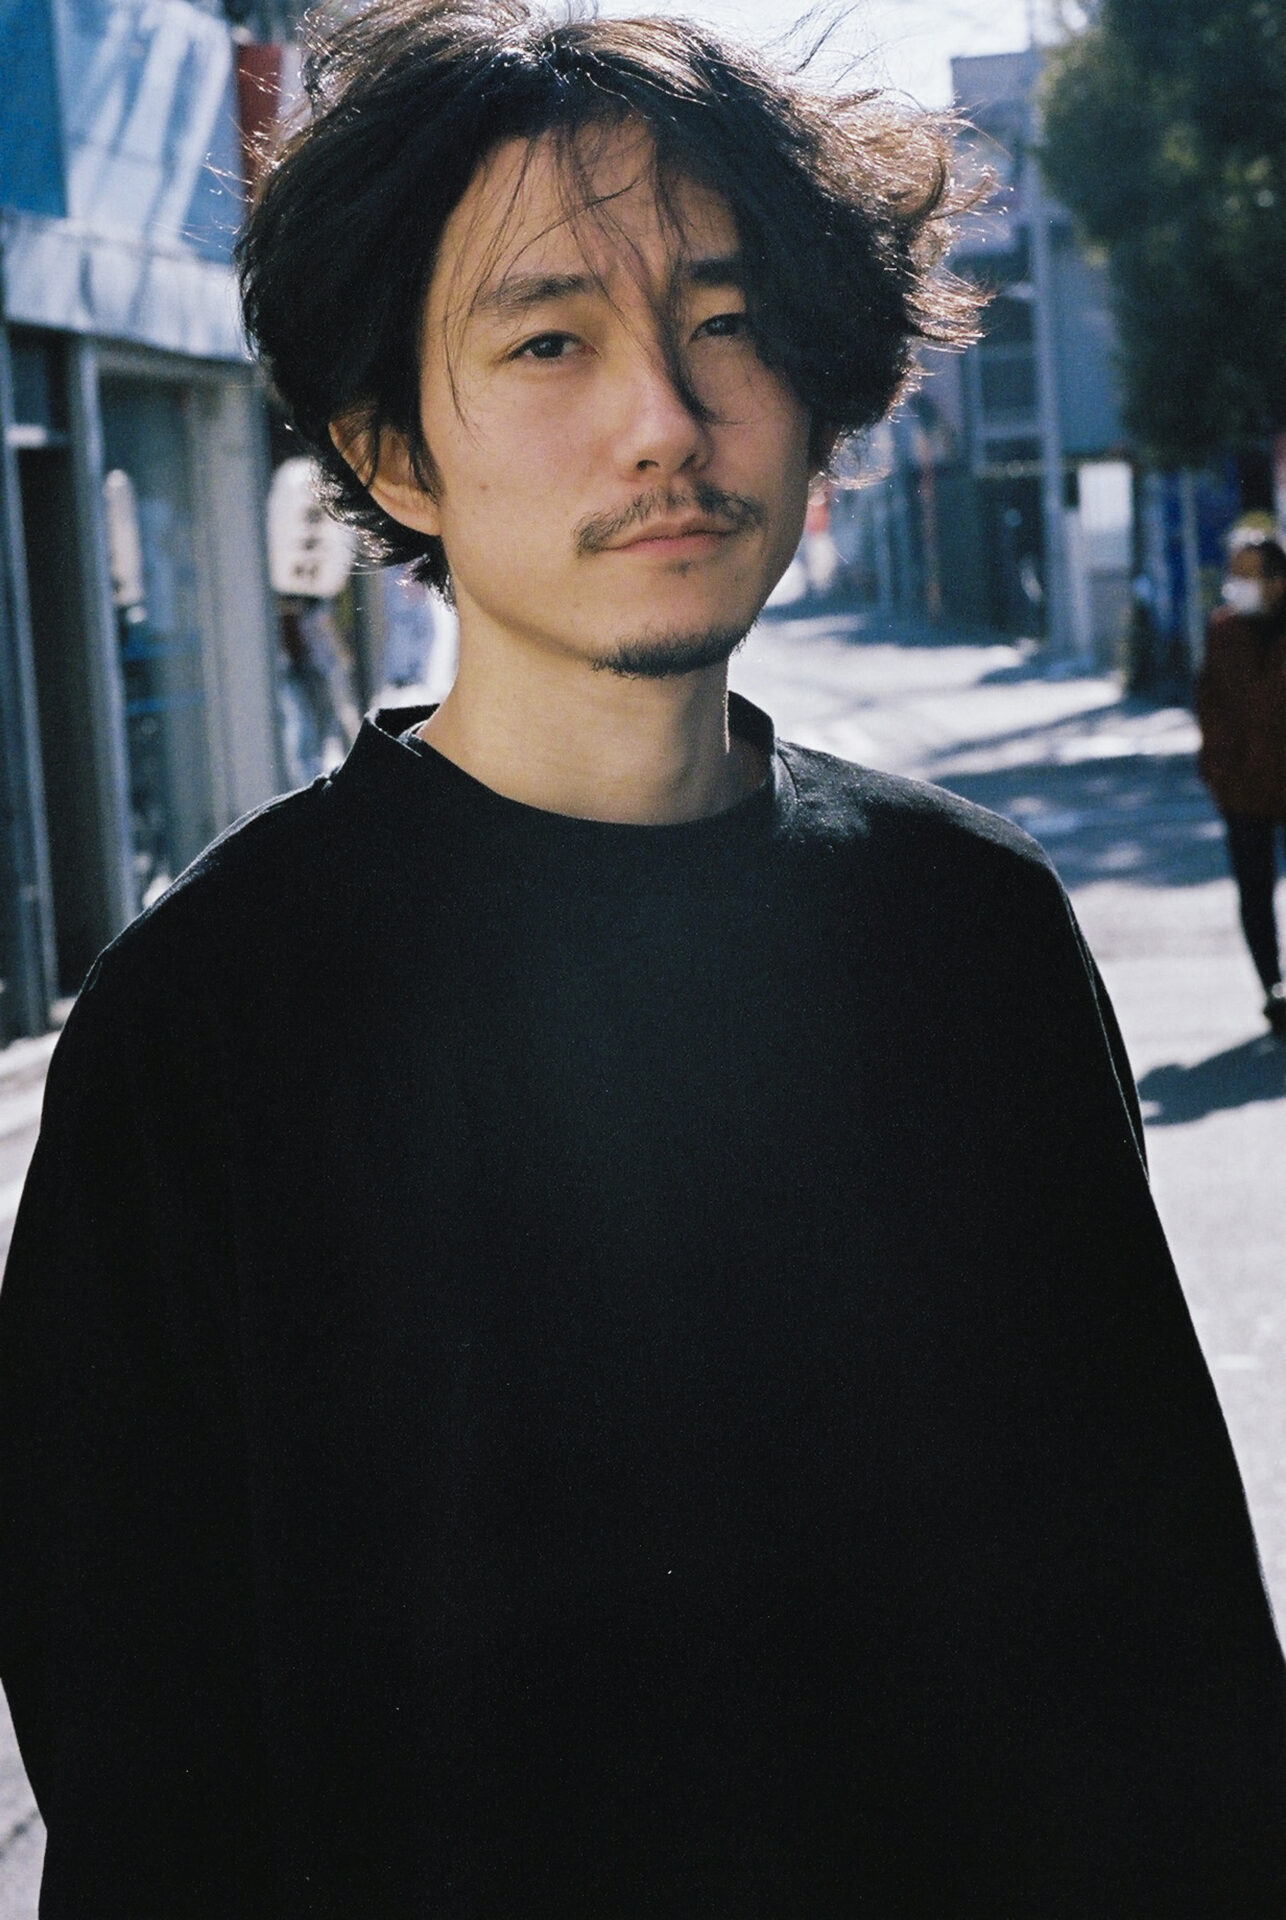 Kenta Cobayashi on the thinking behind his genre-defying photography ...